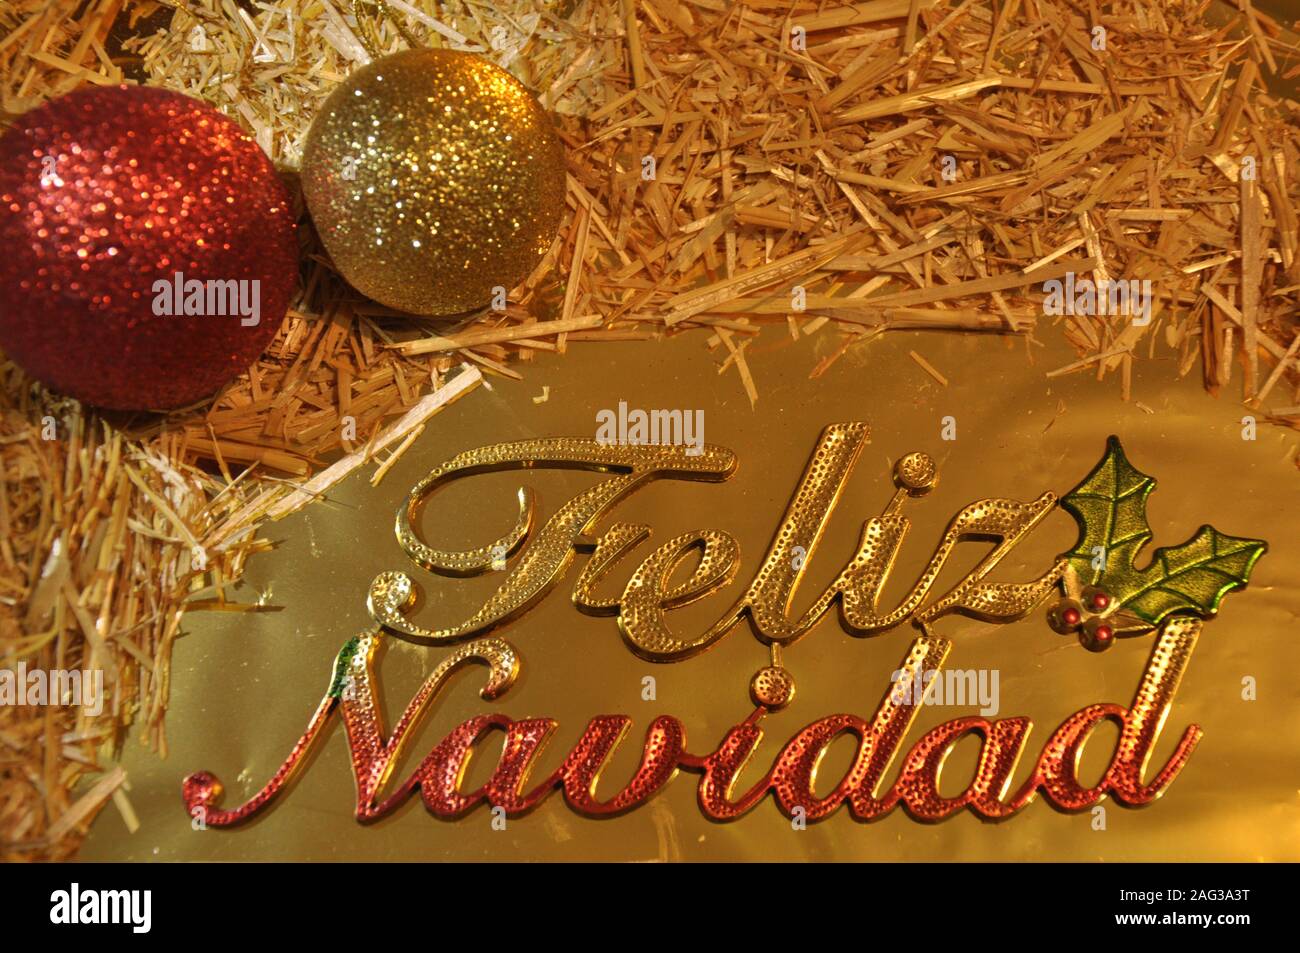 Frohe Weihnachten auf Spanisch lateinische Sprache. Weihnachten gretting Karte. Kugeln, Stroh und goldenen Verzierungen. Stockfoto